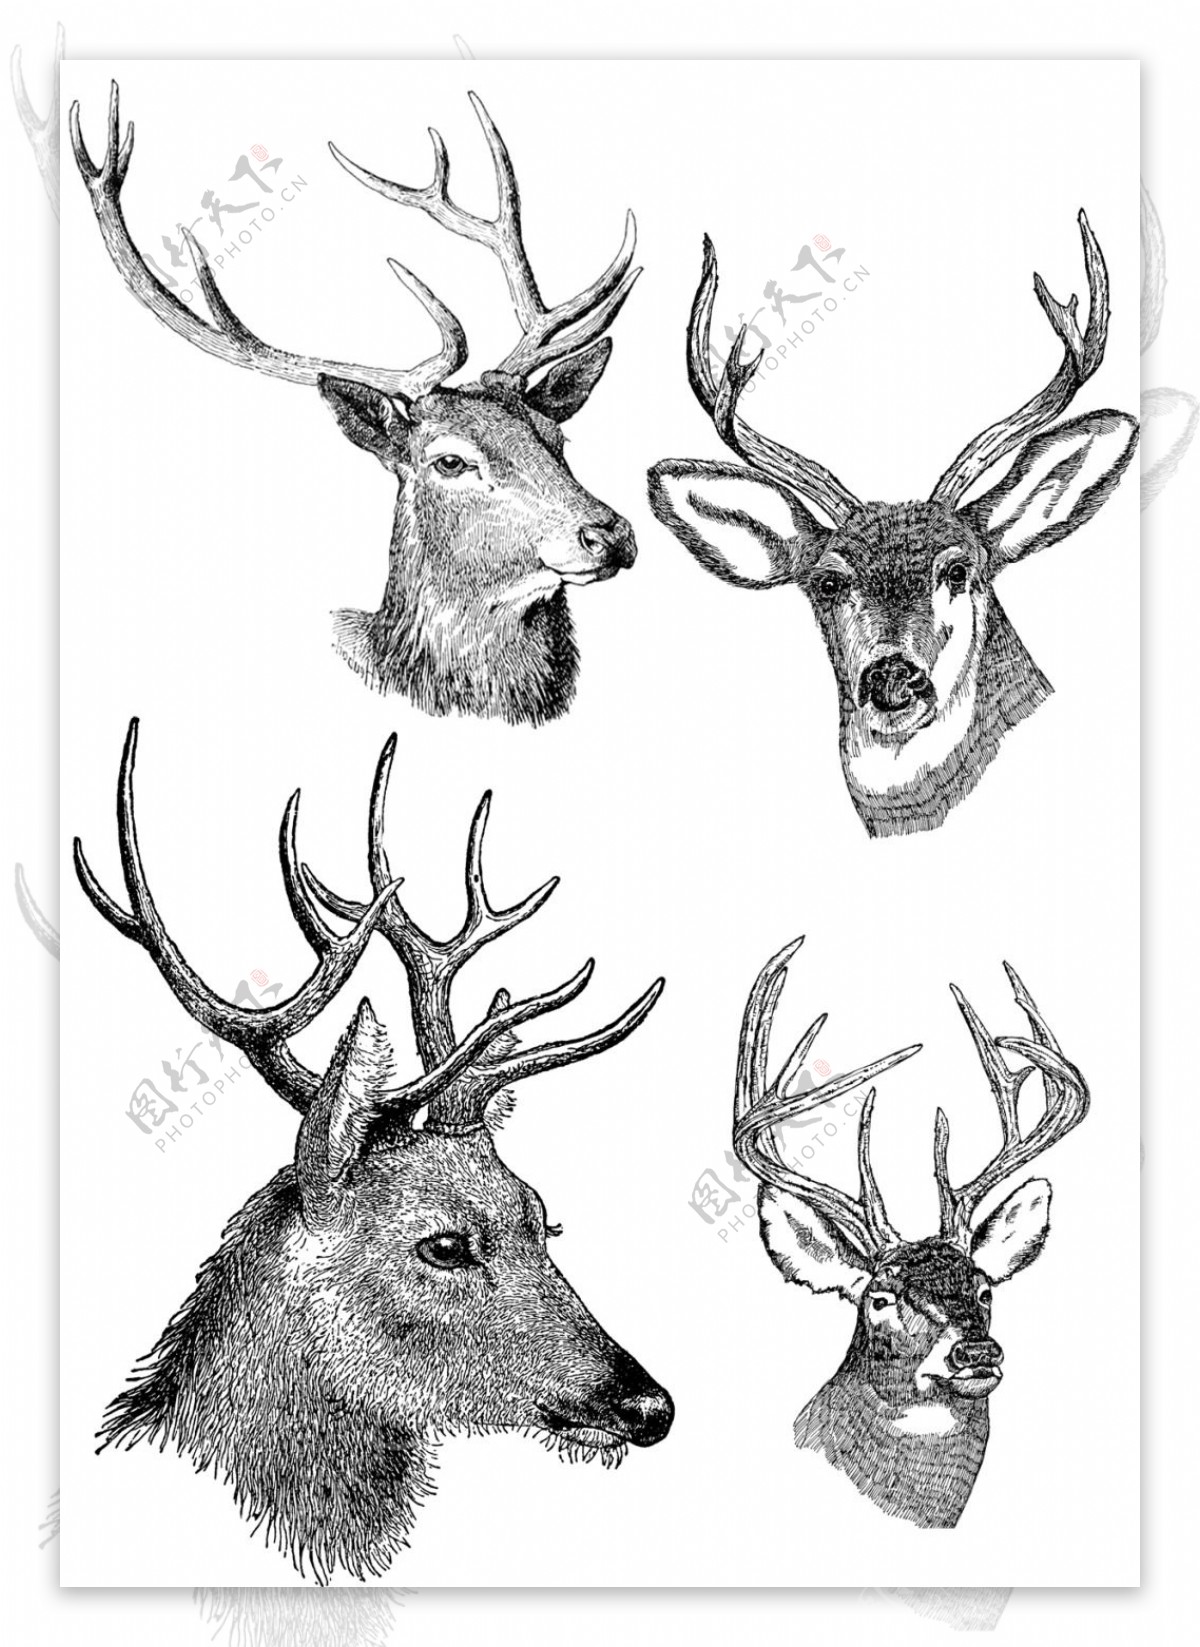 素描绘制四个精美的鹿头插画